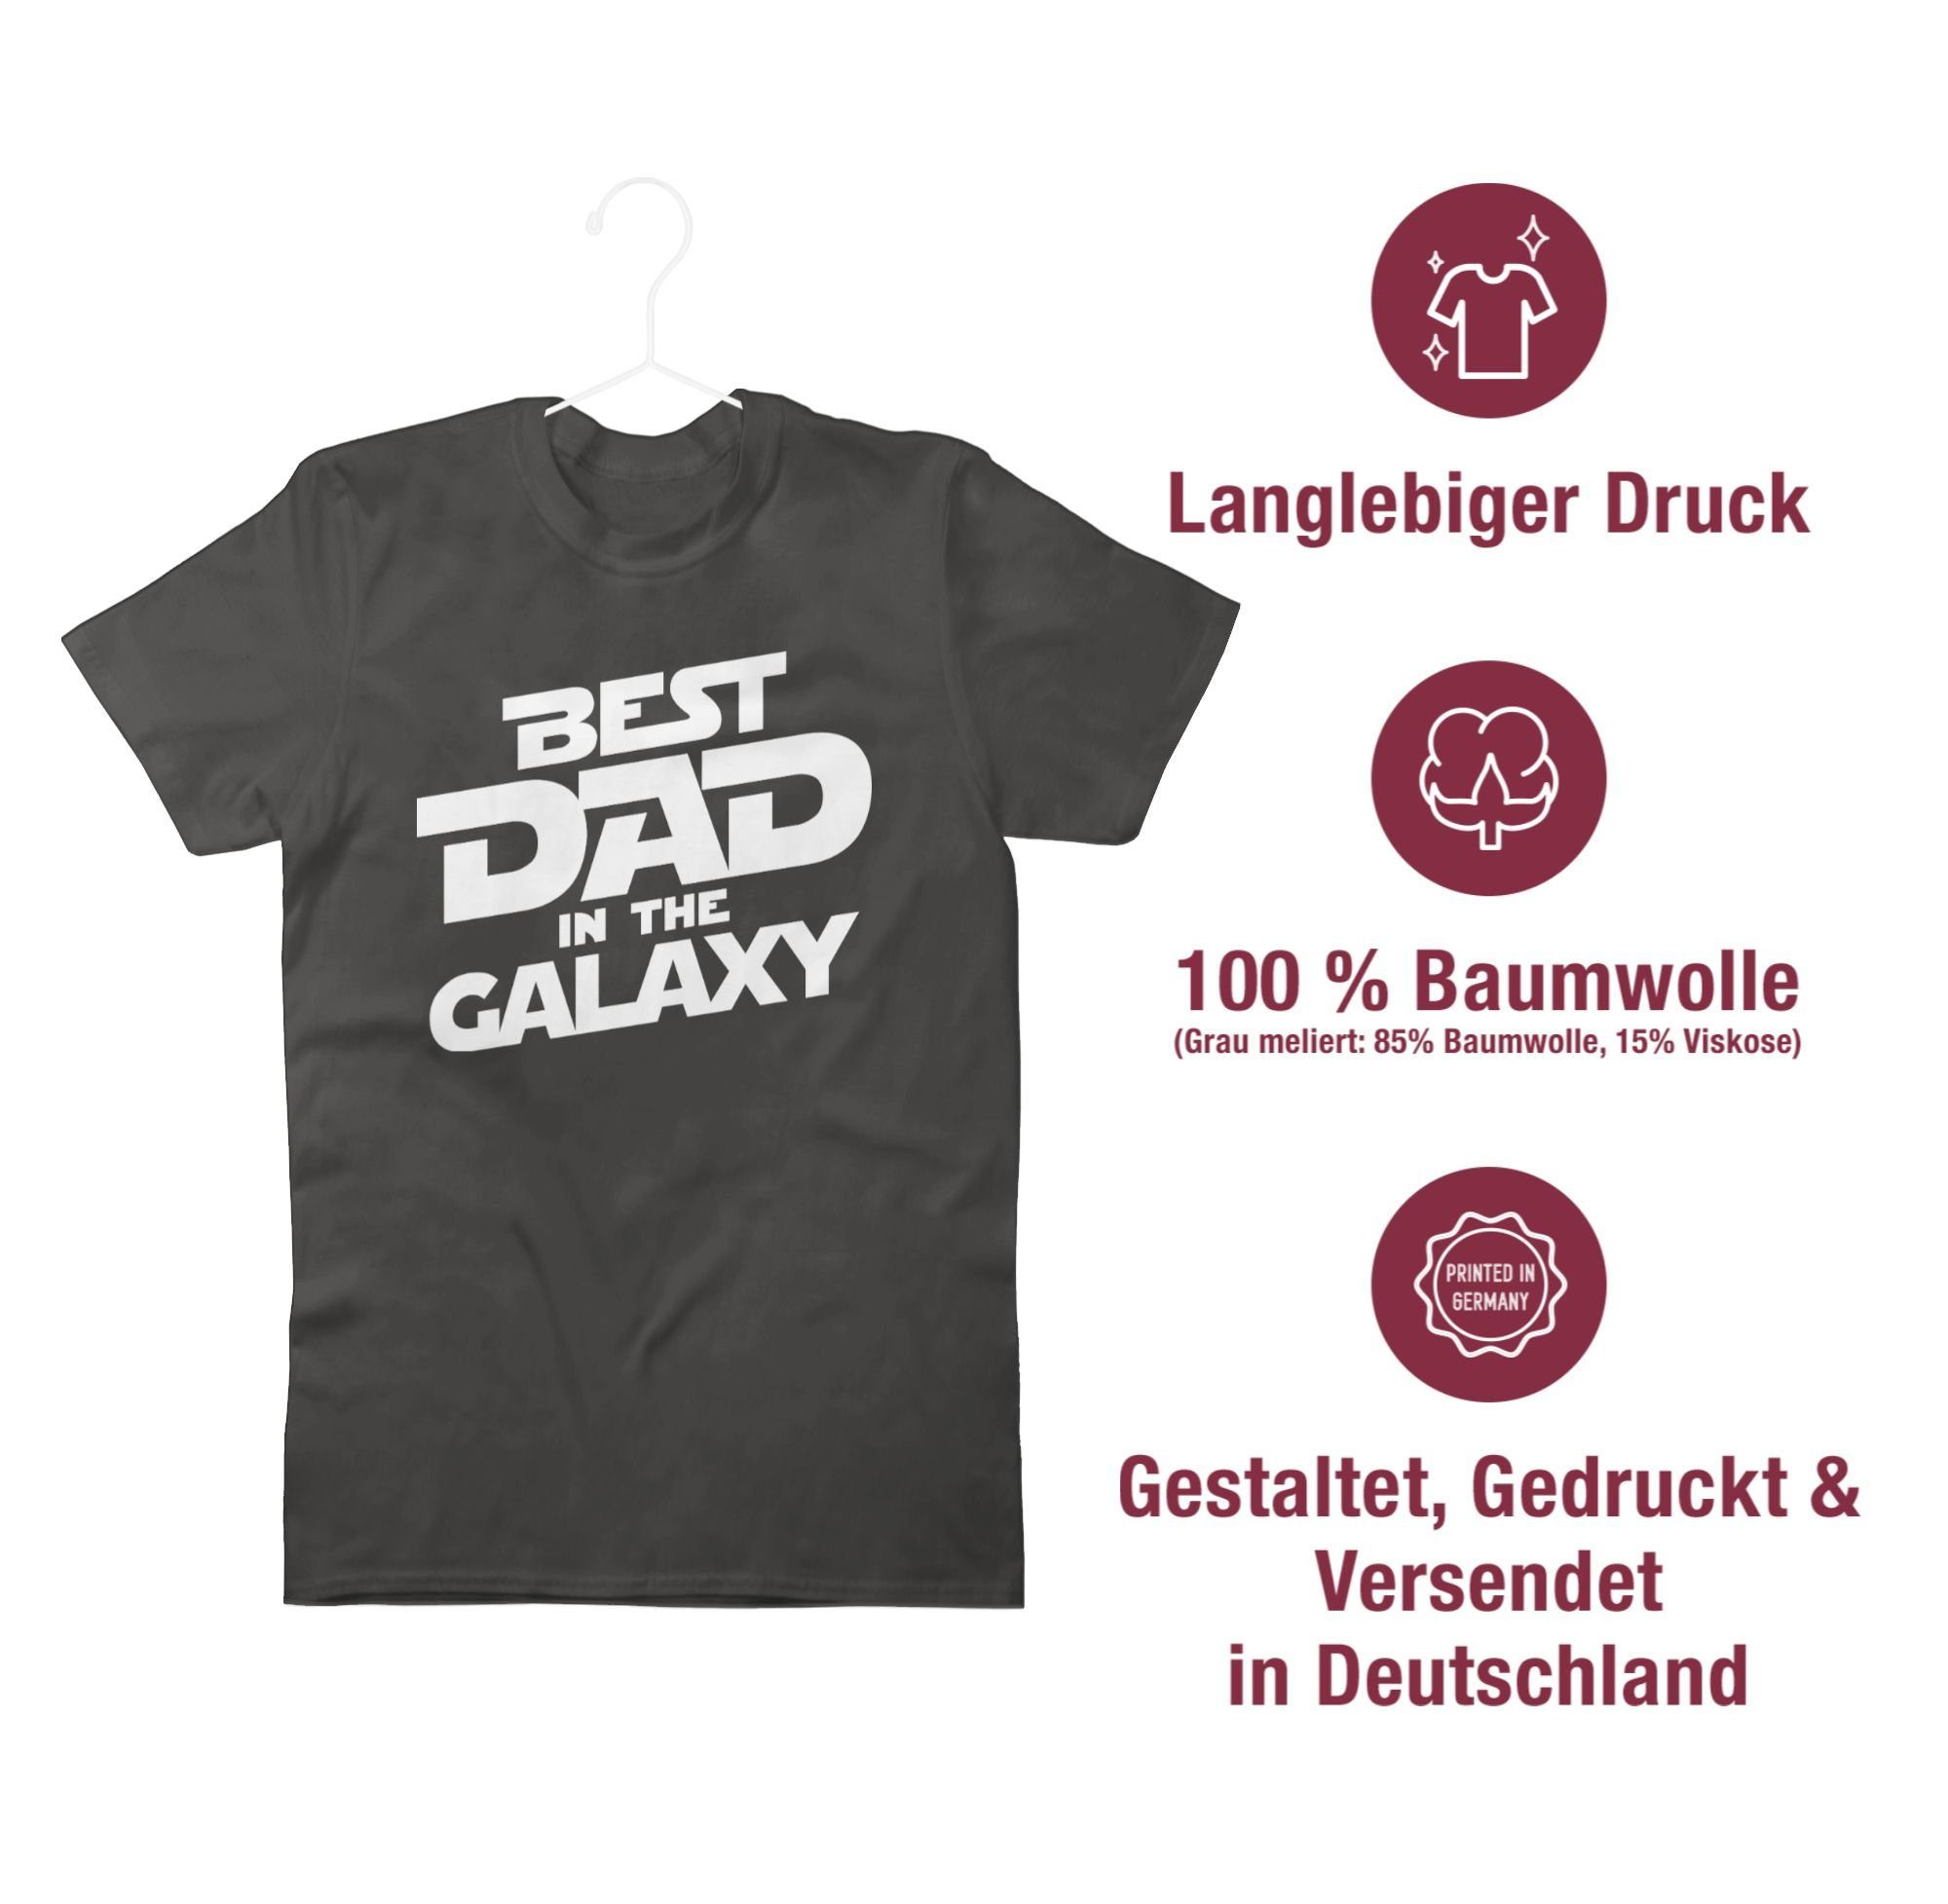 Shirtracer T-Shirt Best dad in Papa galaxy 02 the für Vatertag weiß Dunkelgrau Geschenk